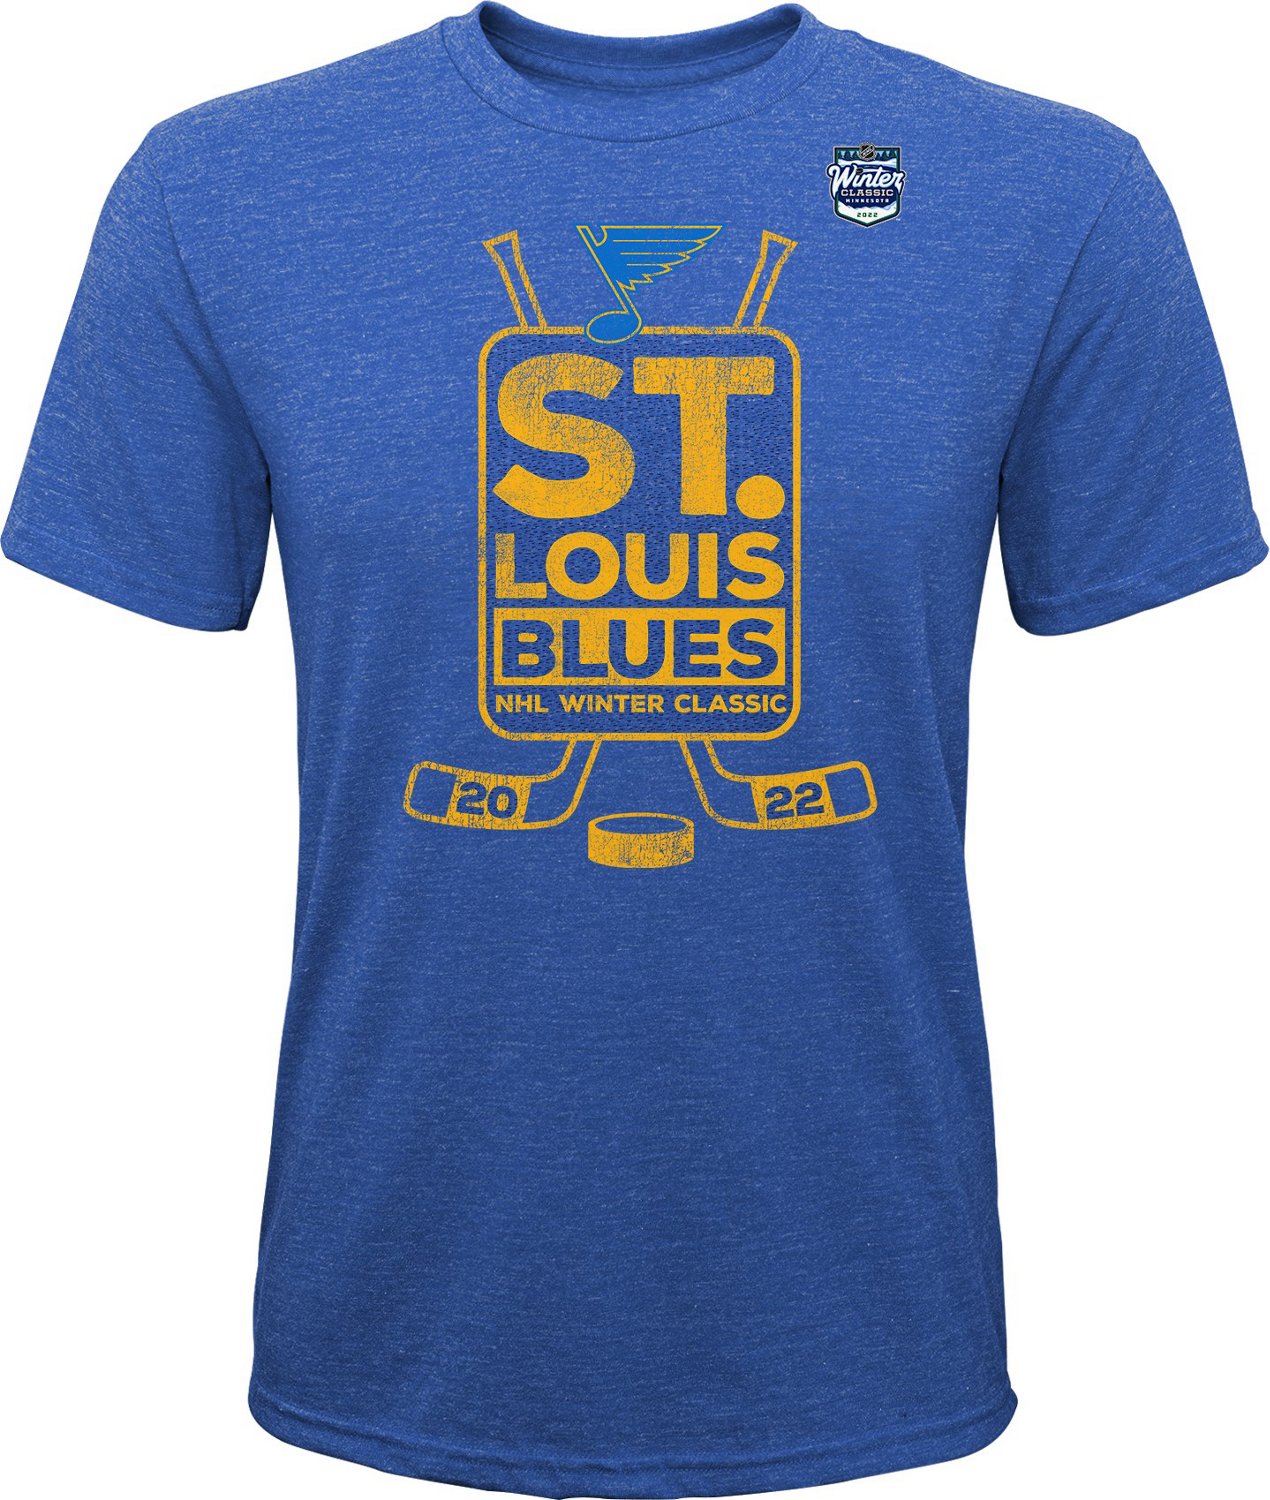 Outerstuff Boys' St. Louis Blues Winter Classic '22 Vintage Graphic T-shirt